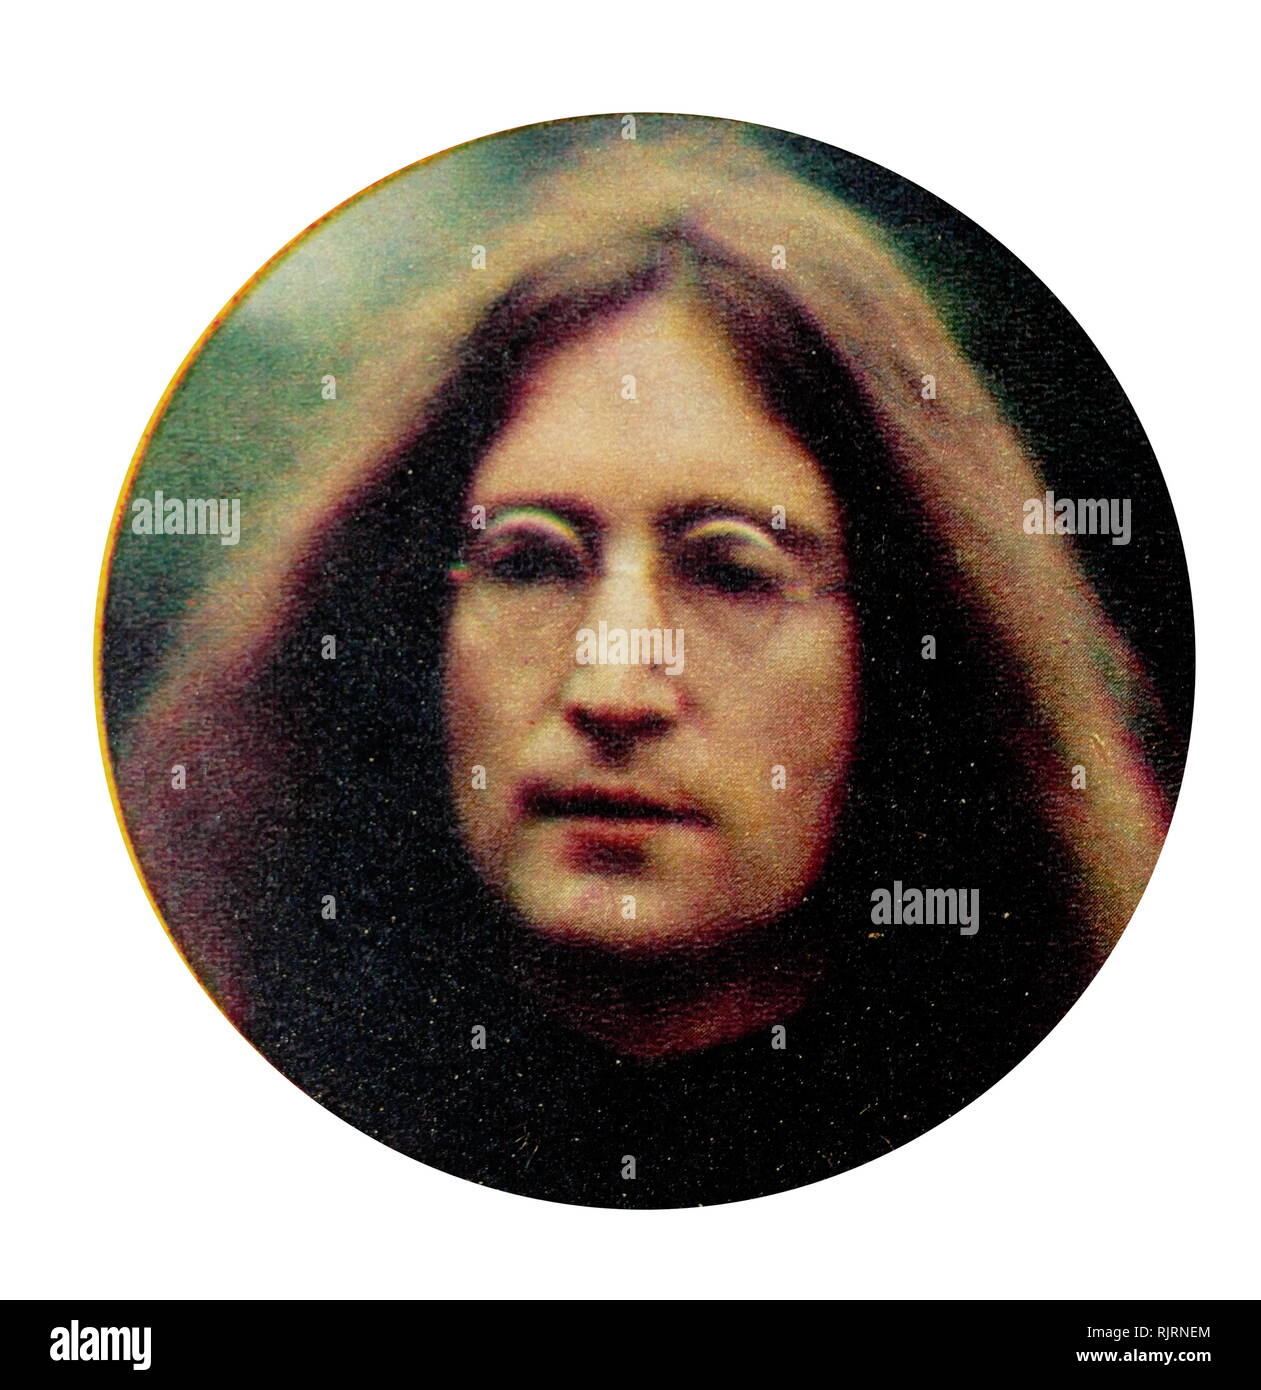 John Lennon (1940 - 1980), chanteur, auteur-compositeur, et militant pour la paix, co-fondateur de The Beatles, les plus gros succès commerciaux de l'histoire de bande de musique populaire il a acquis une renommée mondiale comme le bassiste et chanteur du groupe de rock les Beatles, largement considéré comme le plus populaire et le groupe influent dans l'histoire de la musique pop. Banque D'Images